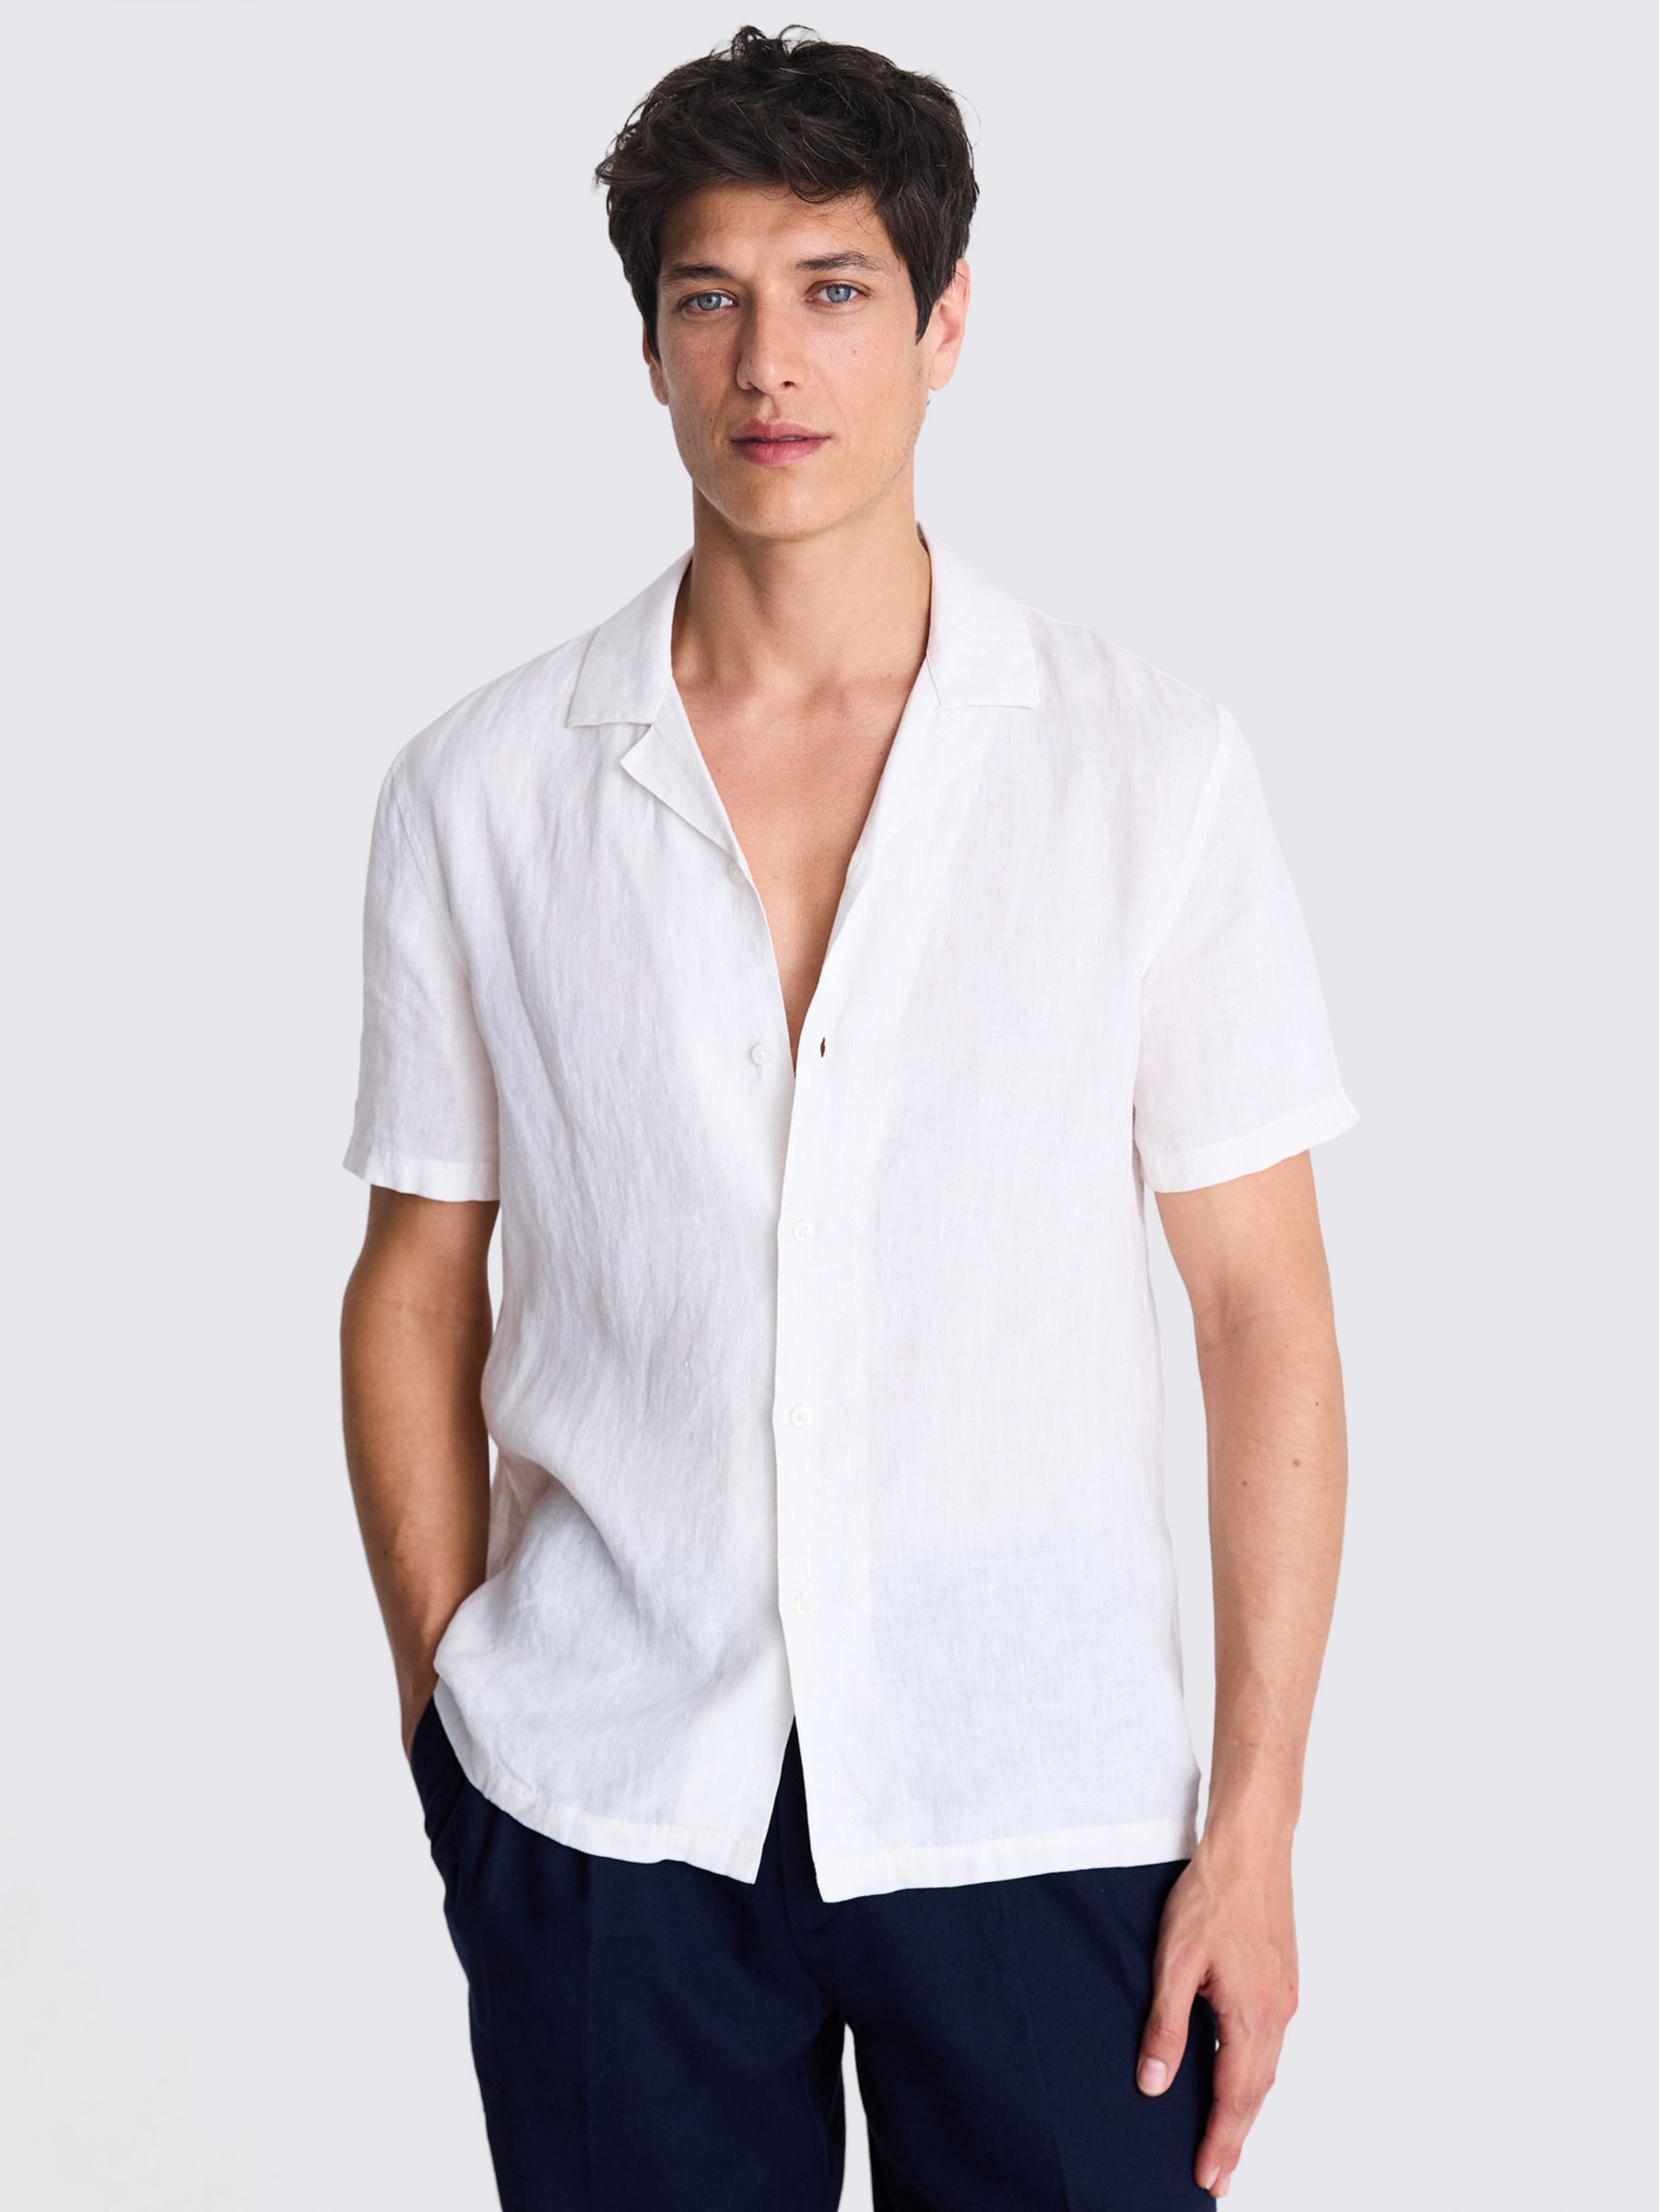 Moss Linen Cutaway Collar Shirt, Beige, L